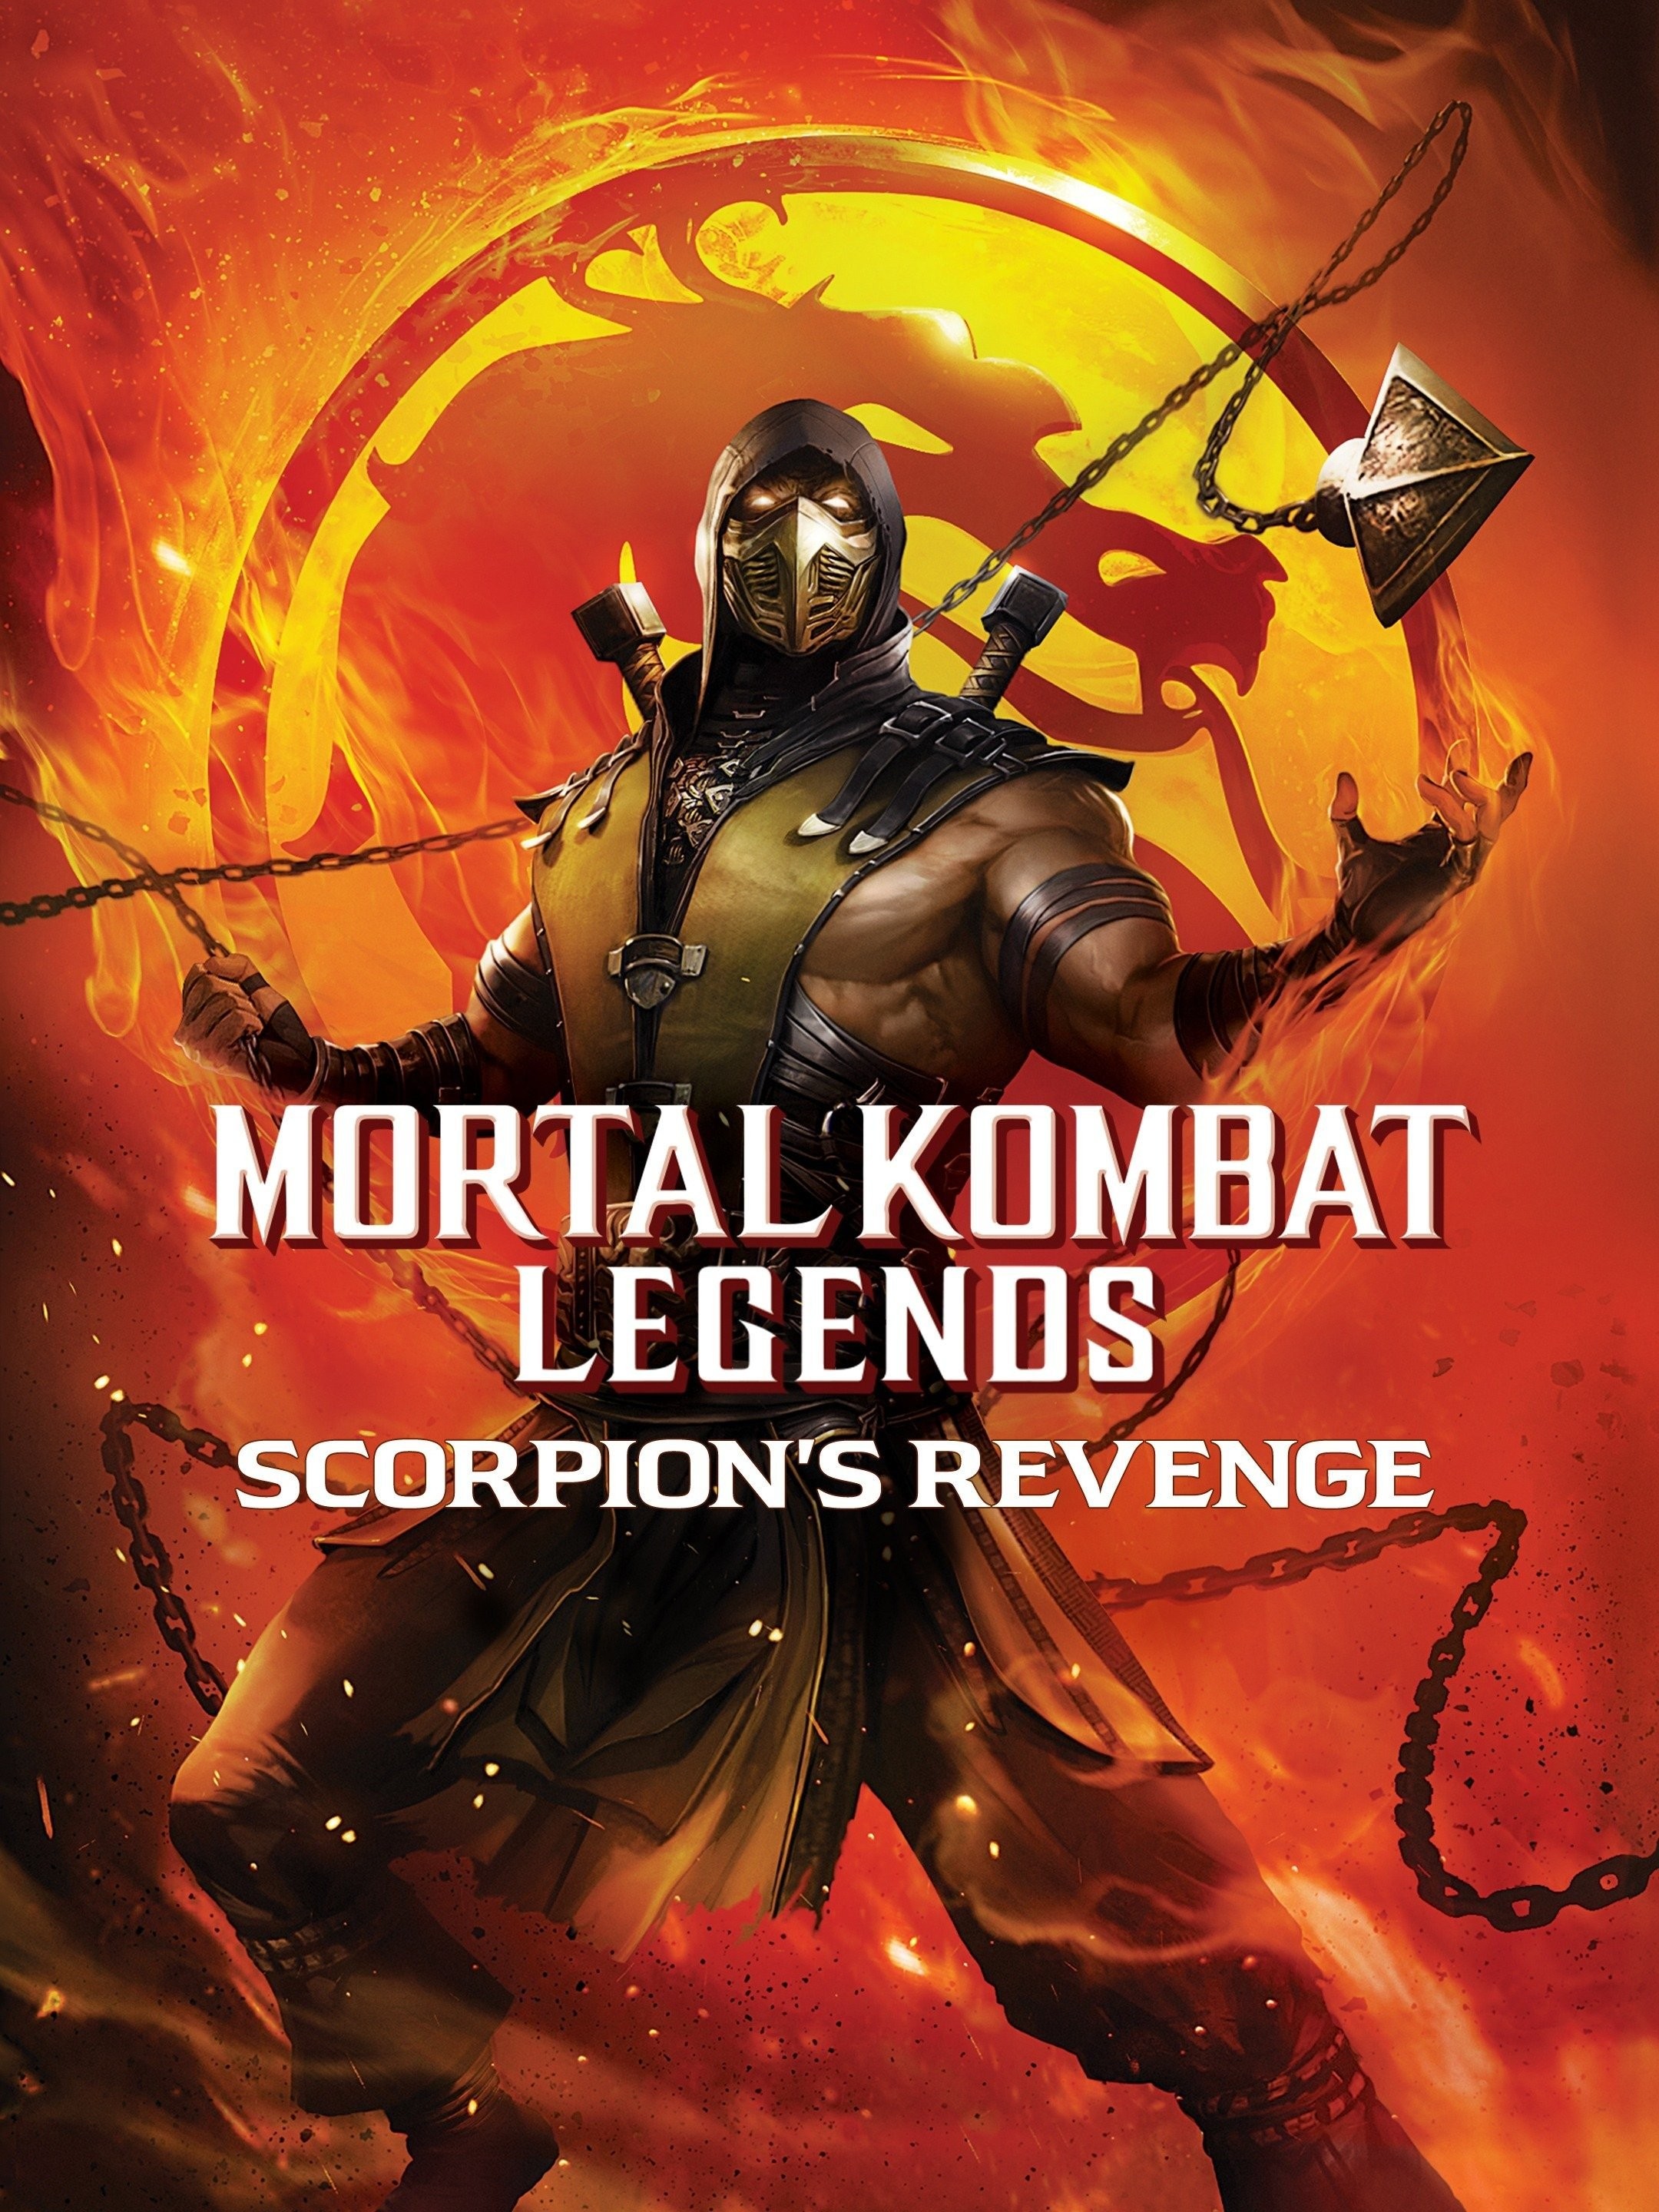 Mortal Kombat (2021) brings fatalism and fatalities in equal measure